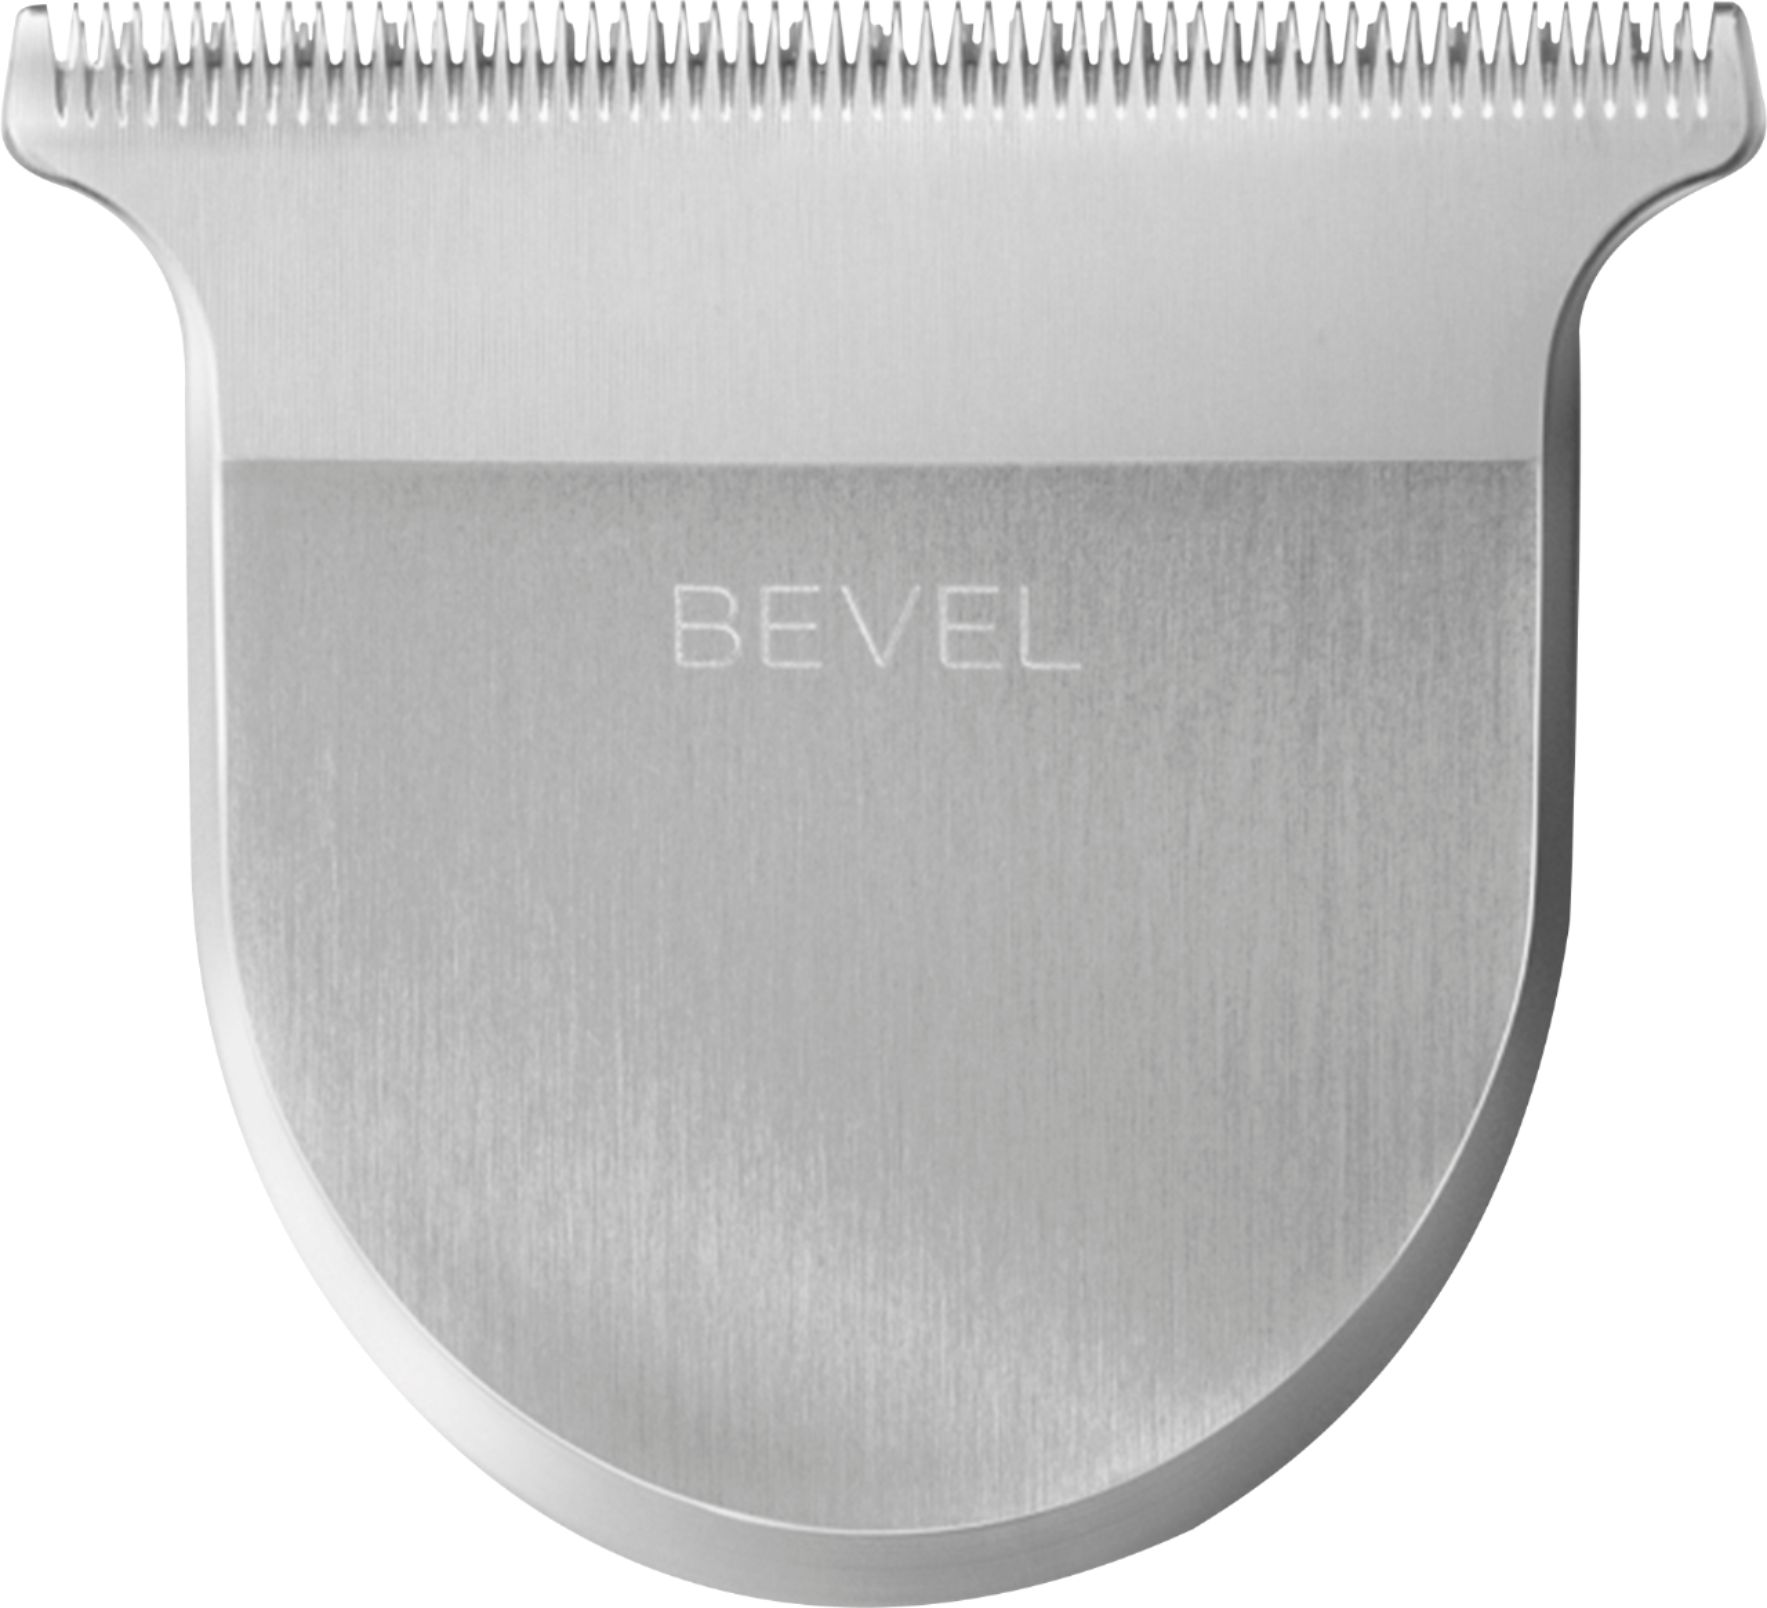 Angle View: Bevel - Precision T Blade Attachment - Silver